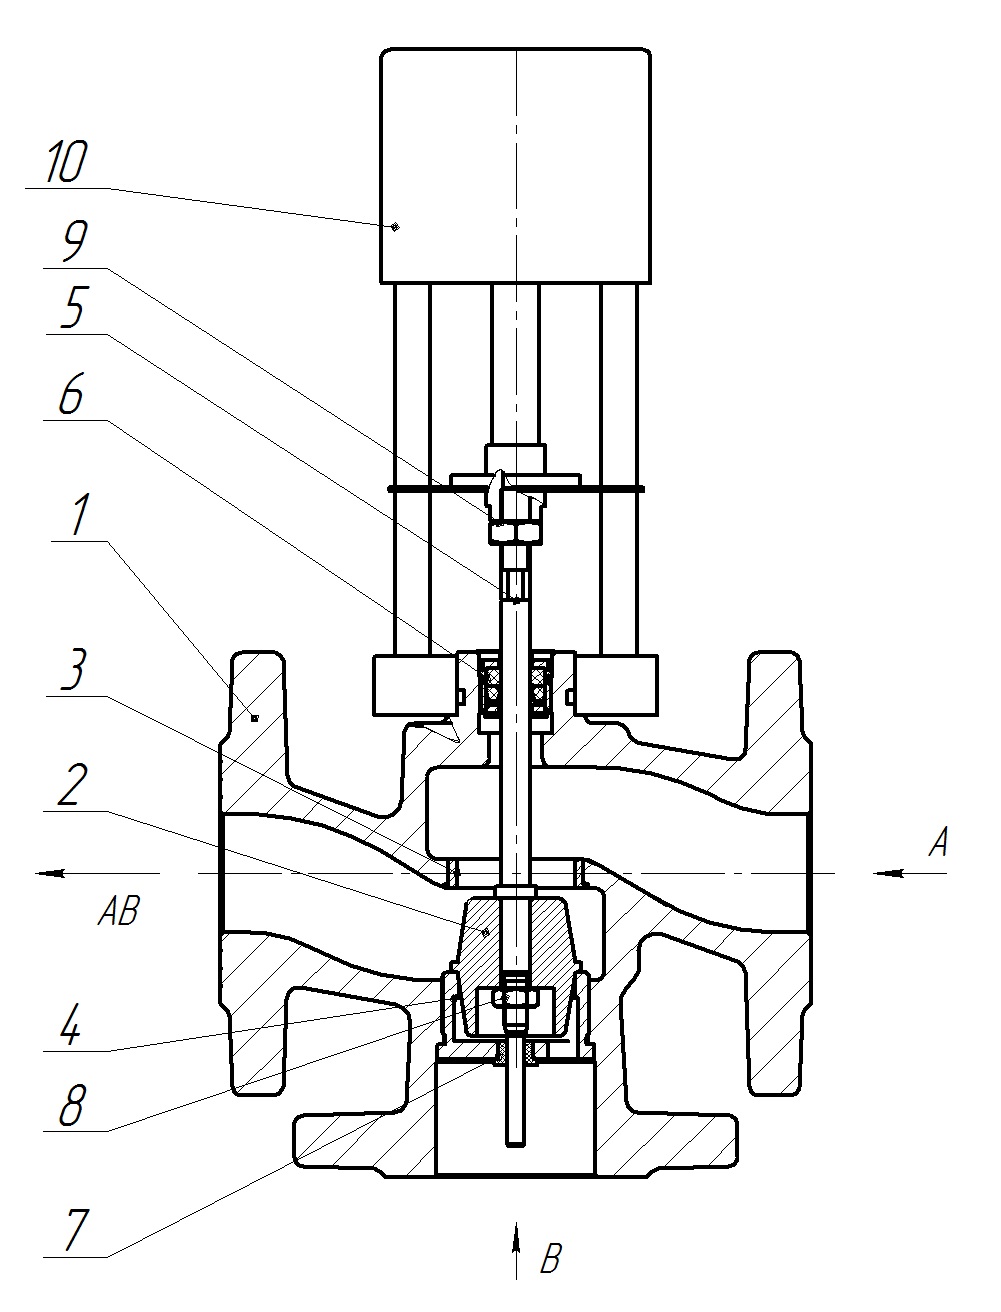 Клапан регулирующий трехходовой разделительный DN.ru 23ч901нж Ду15 Ру16 Kvs4 серый чугун СЧ20, фланцевый, Tmax до 150°С с электроприводом Катрабел TW-500-XD220